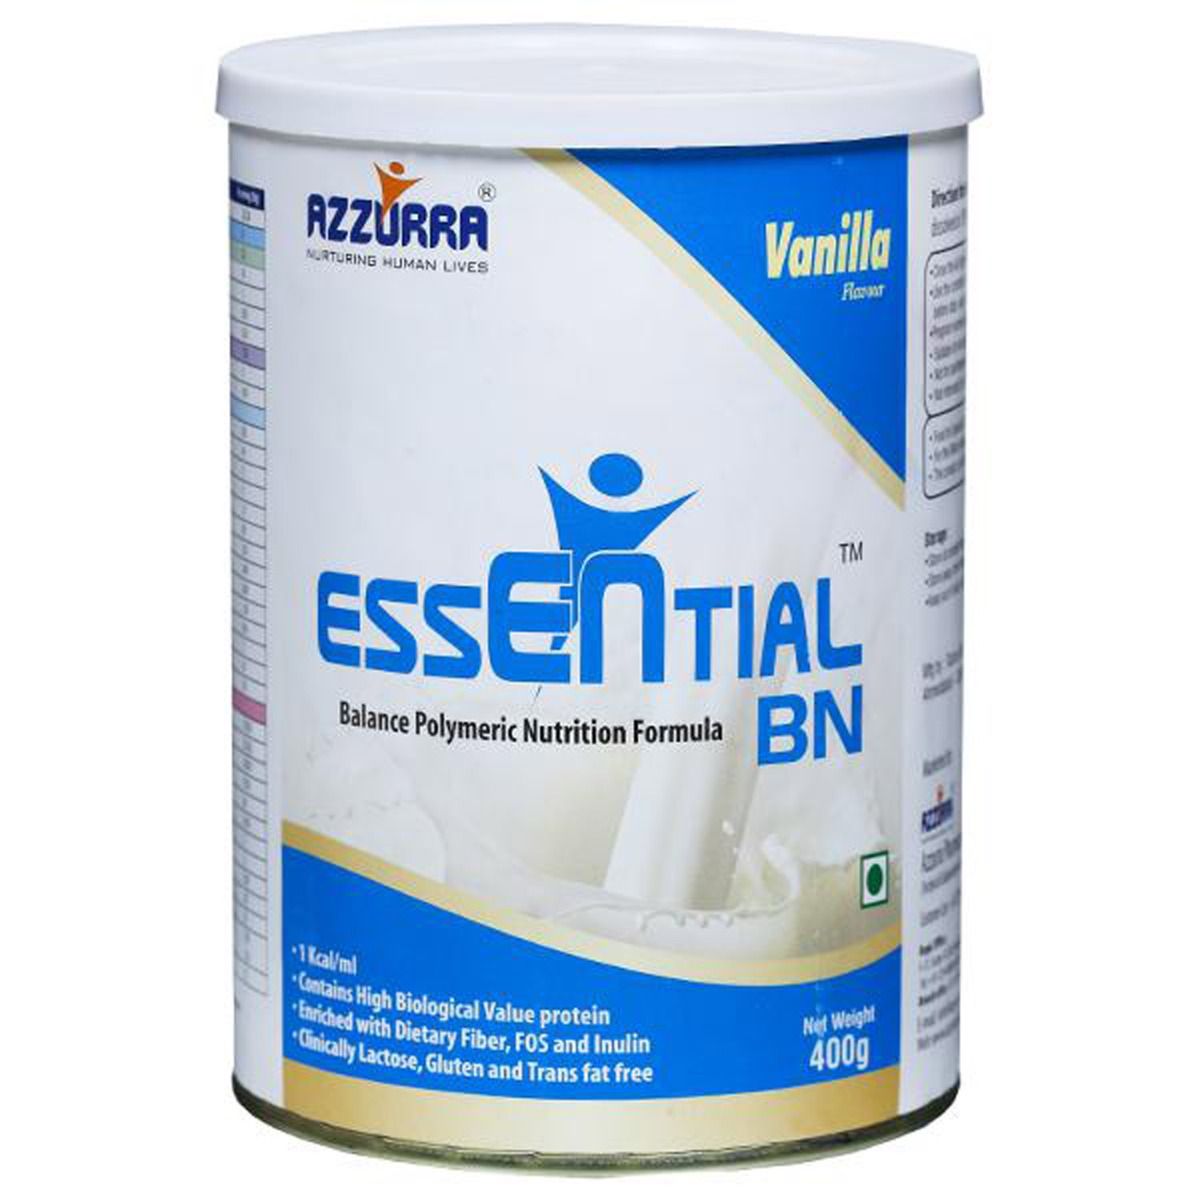 Essential BN Vanilla Flavoured Powder, 400 gm Tin, Pack of 1 